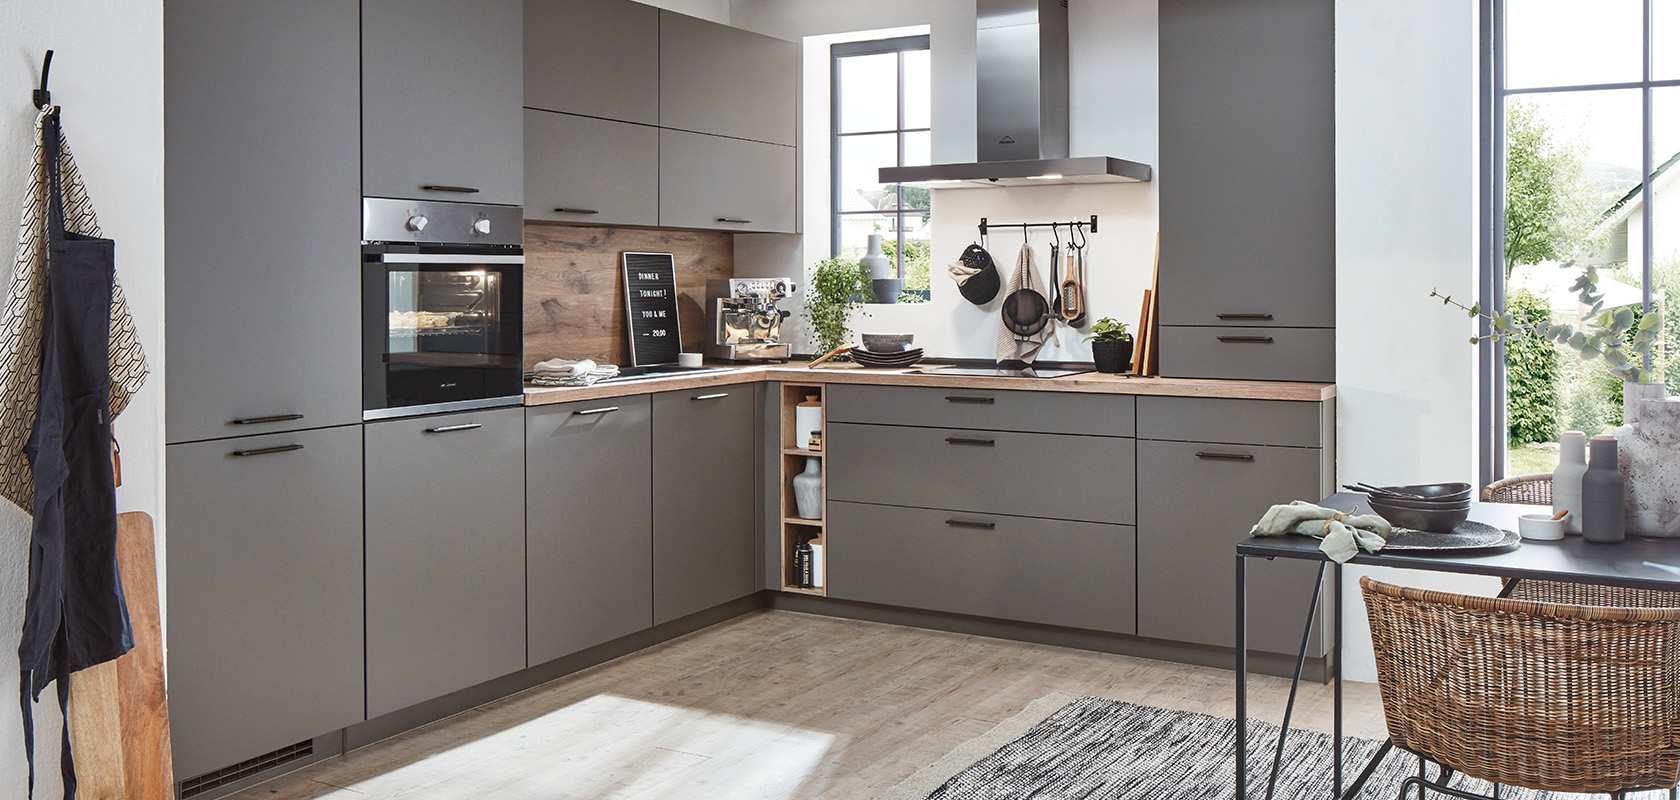 Cocina contemporánea con gabinetes grises, encimeras de madera y electrodomésticos de acero inoxidable, que exhiben un diseño minimalista y elegancia práctica.